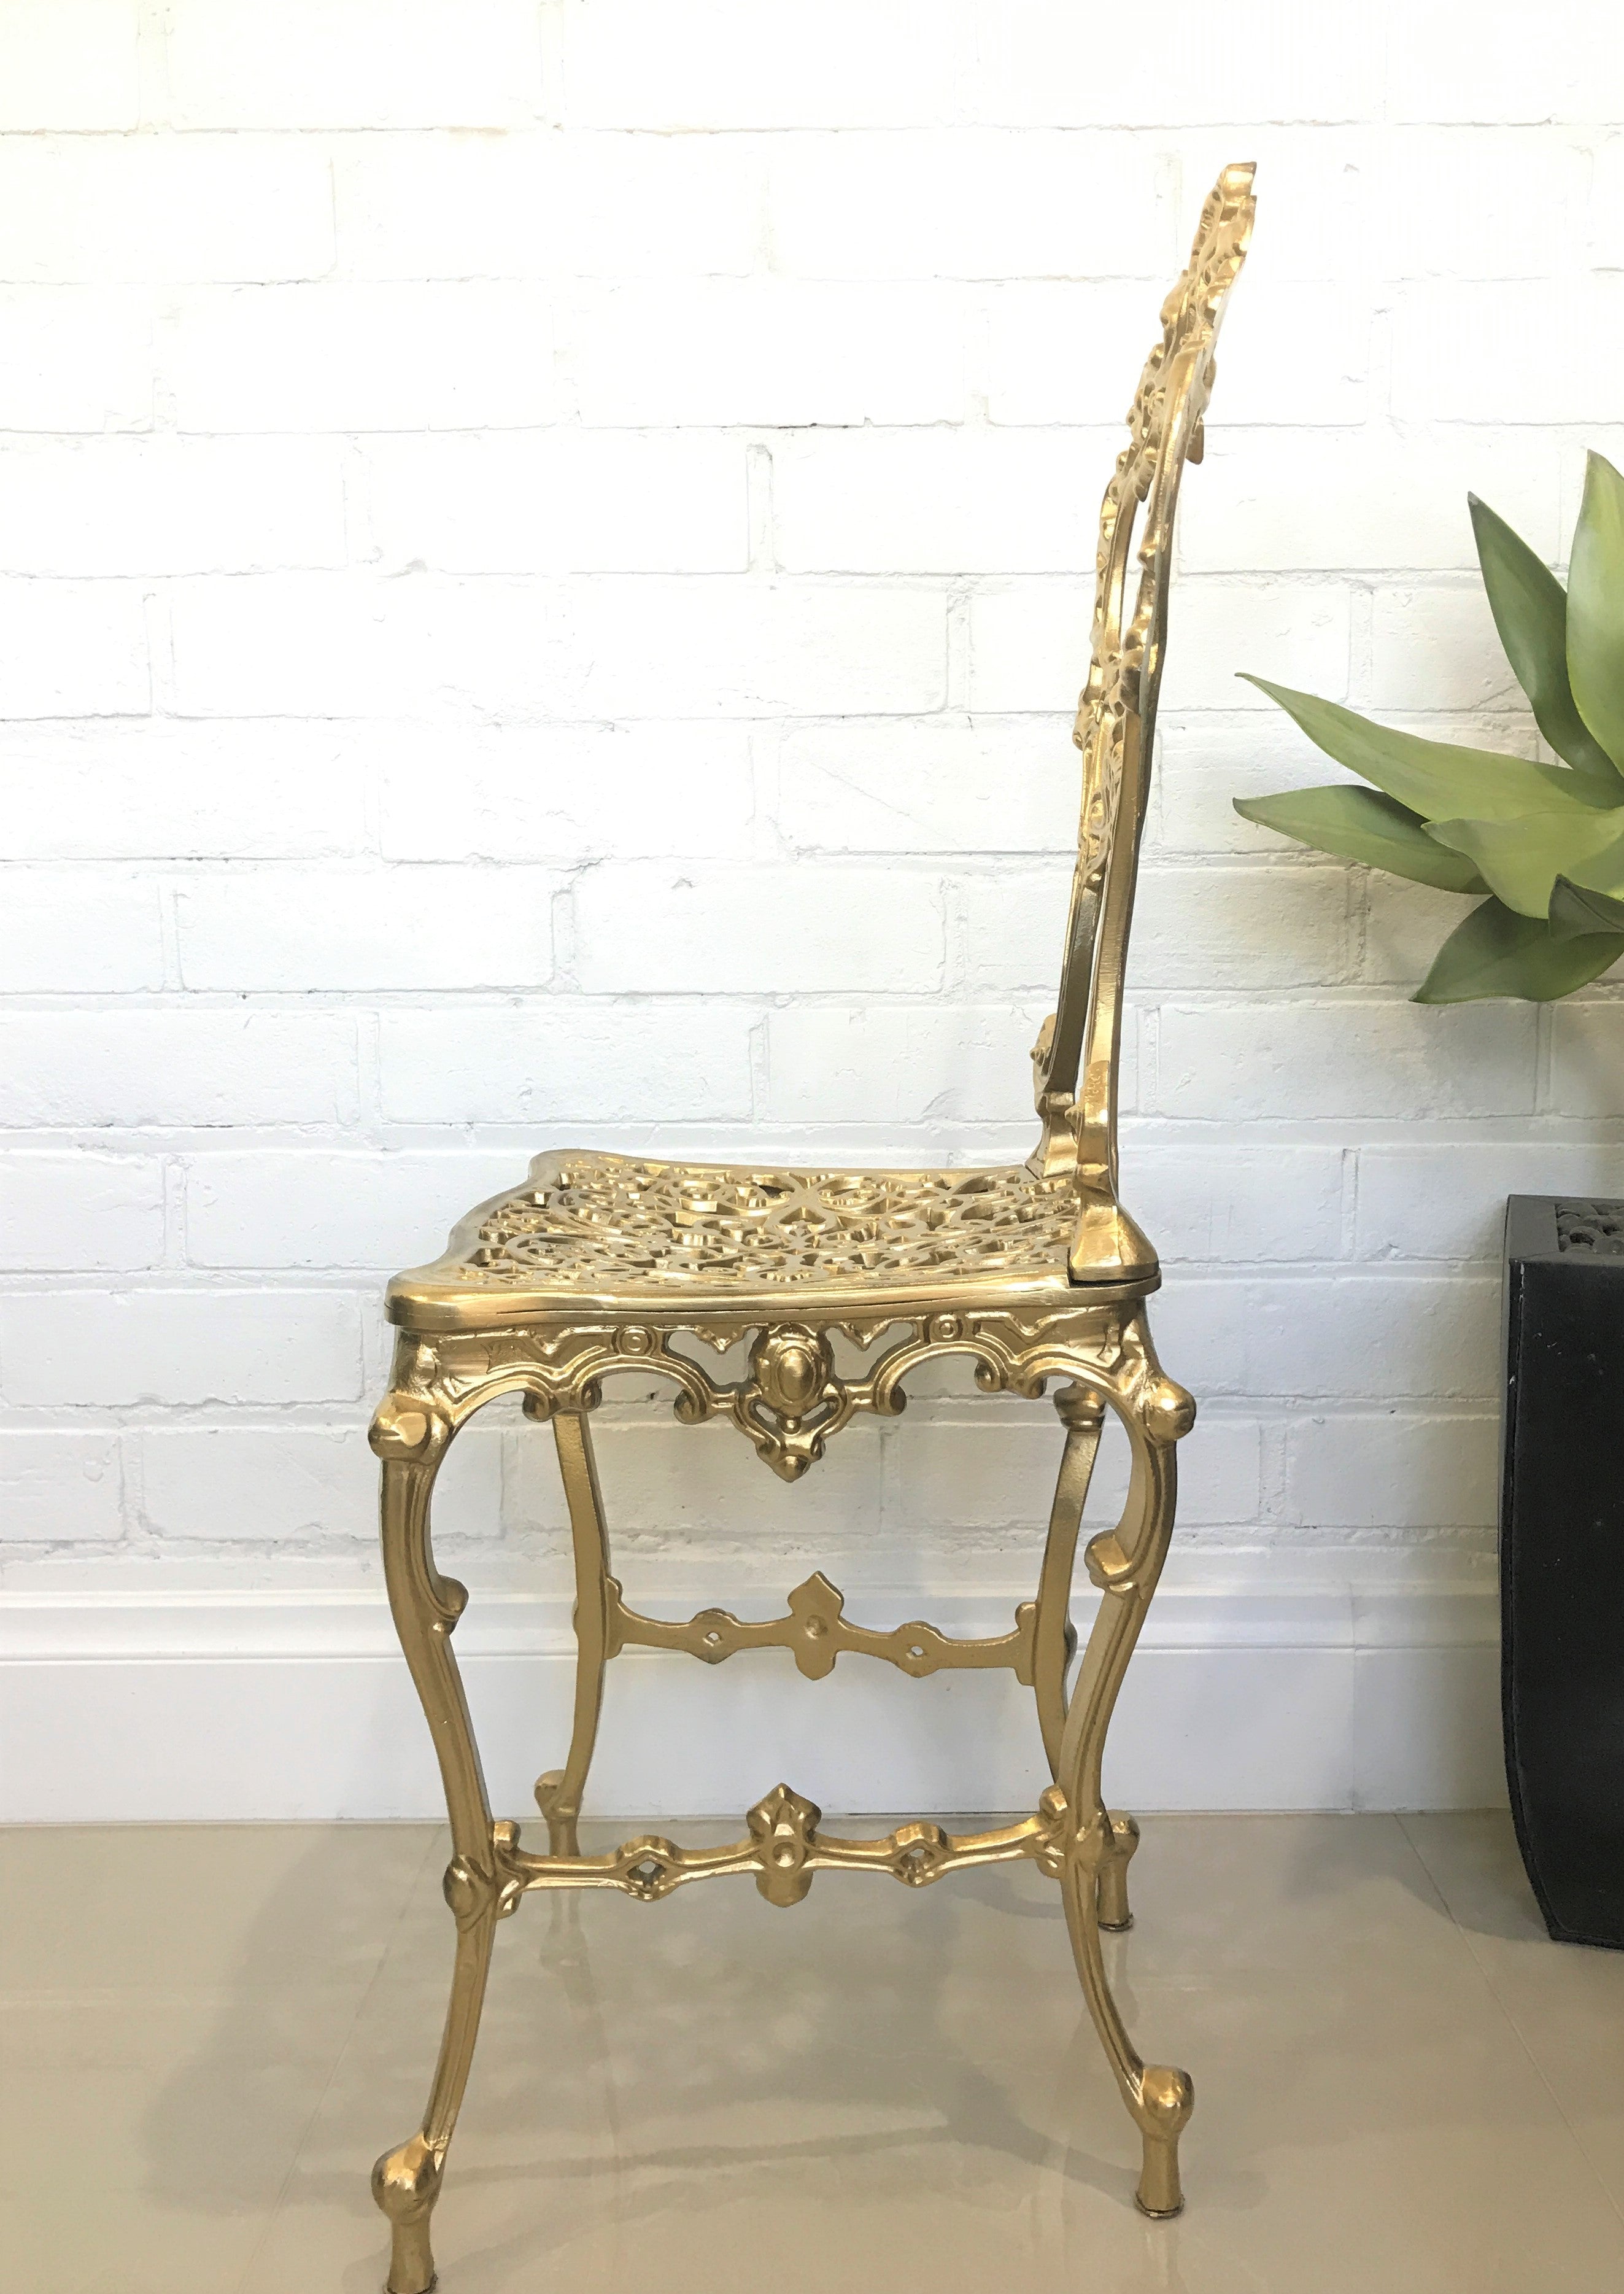 Vintage Cast Ornate Gold Boudoir Chair | eXibit collection